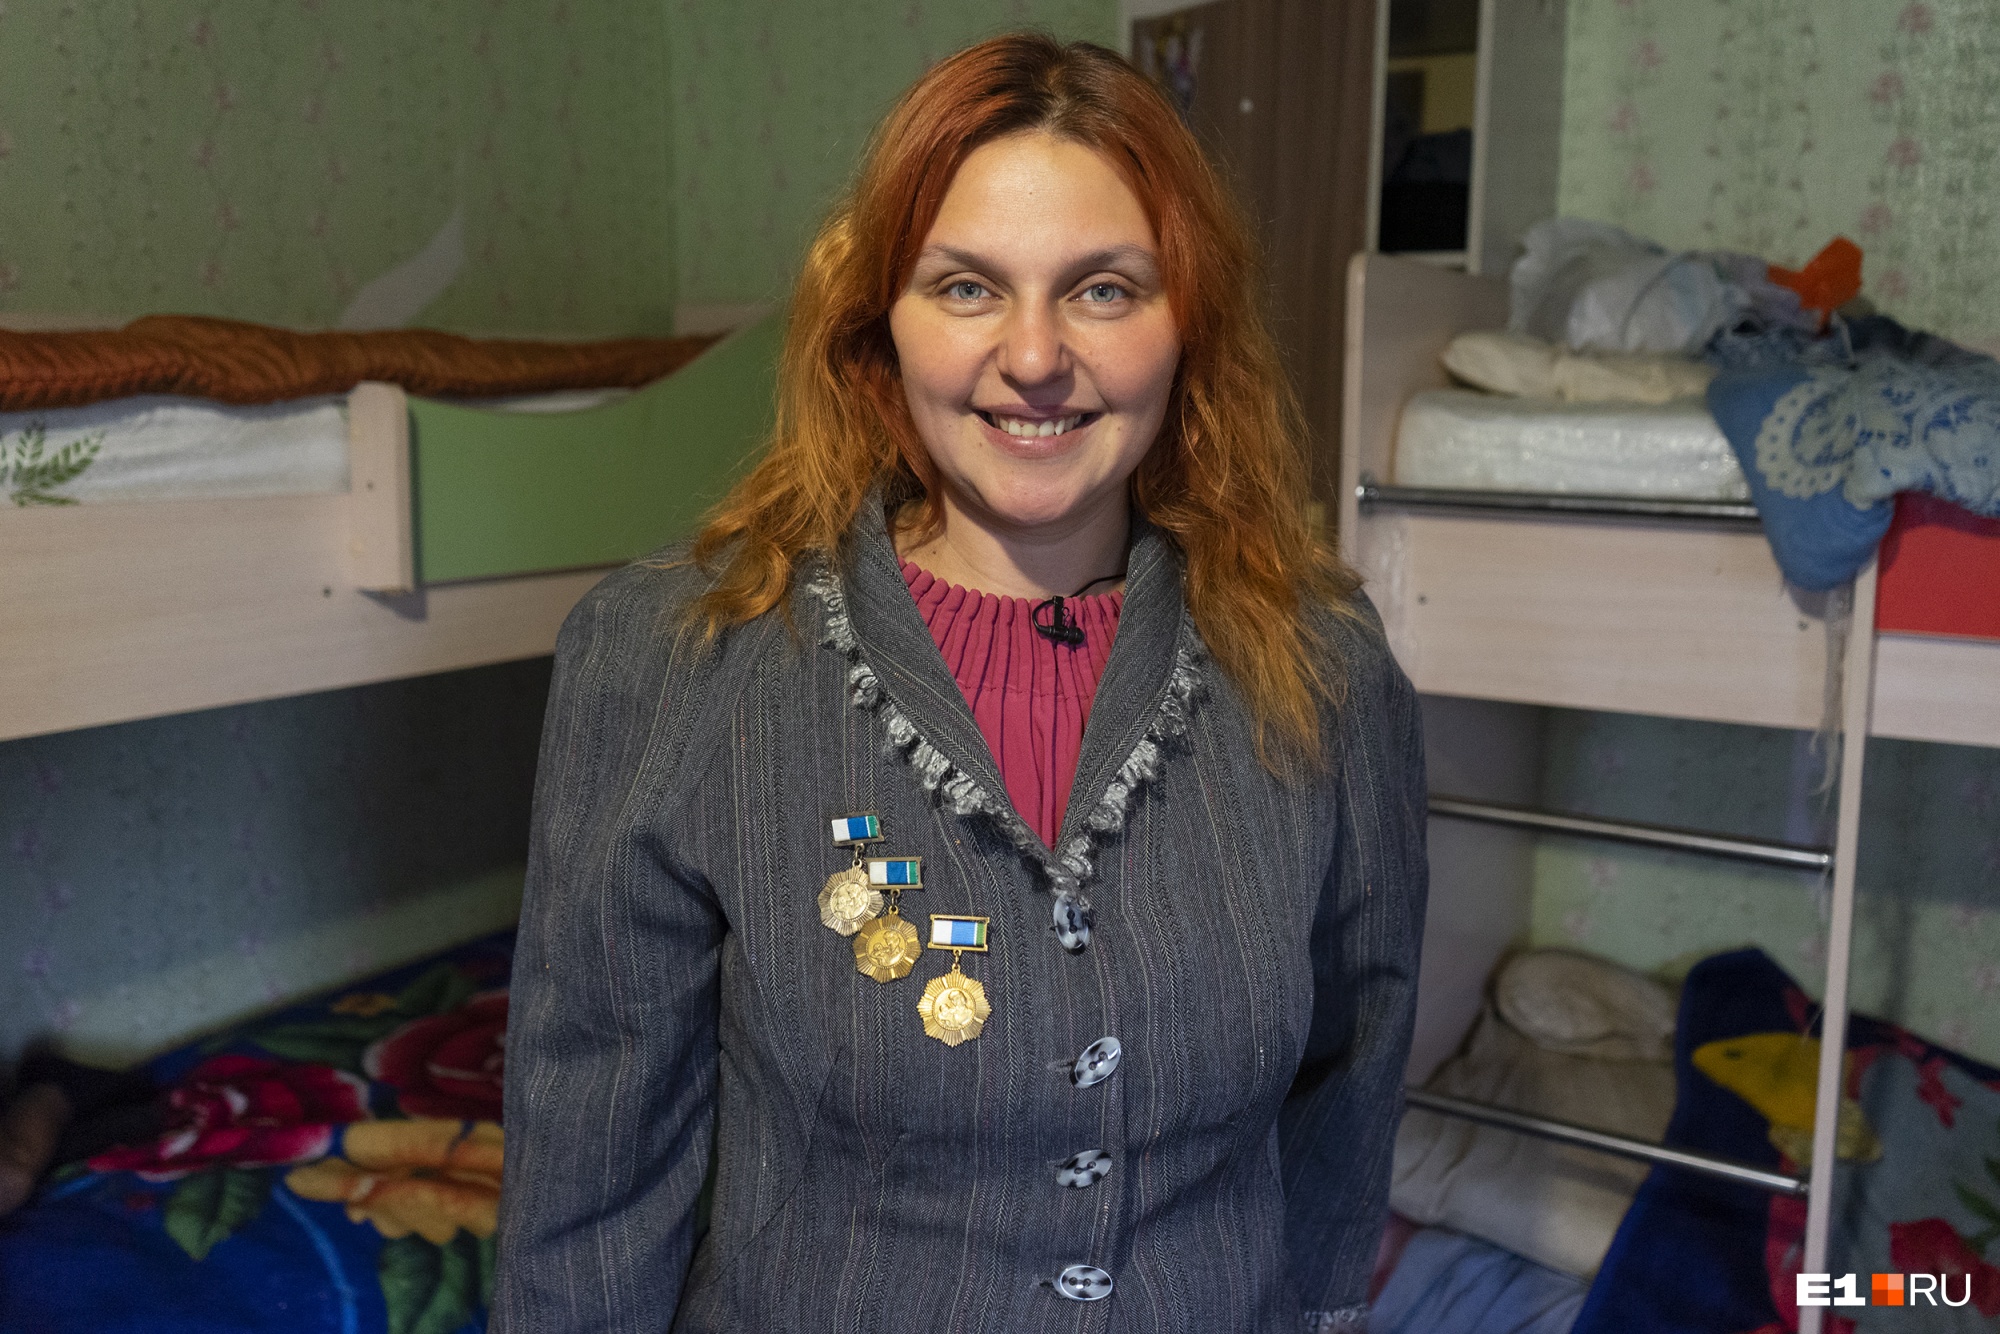 Семья Кириченко была самой многодетной в Тугулымском районе, но по сияющей улыбке мамы этого ни за что не скажешь